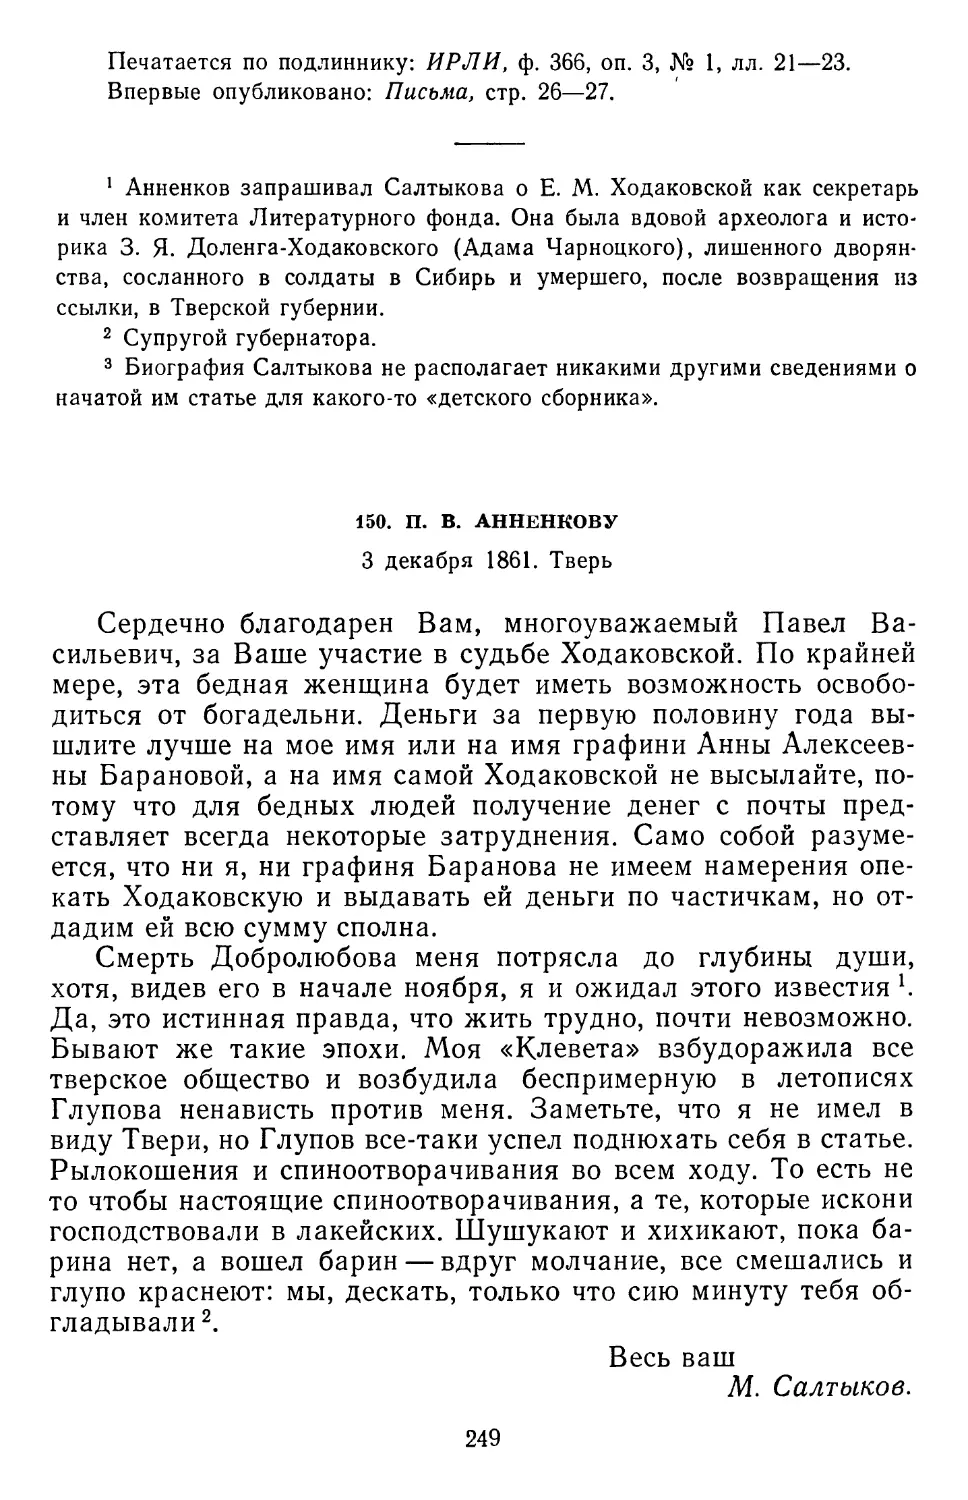 150.П.В. Анненкову. 3 декабря 1861. Тверь